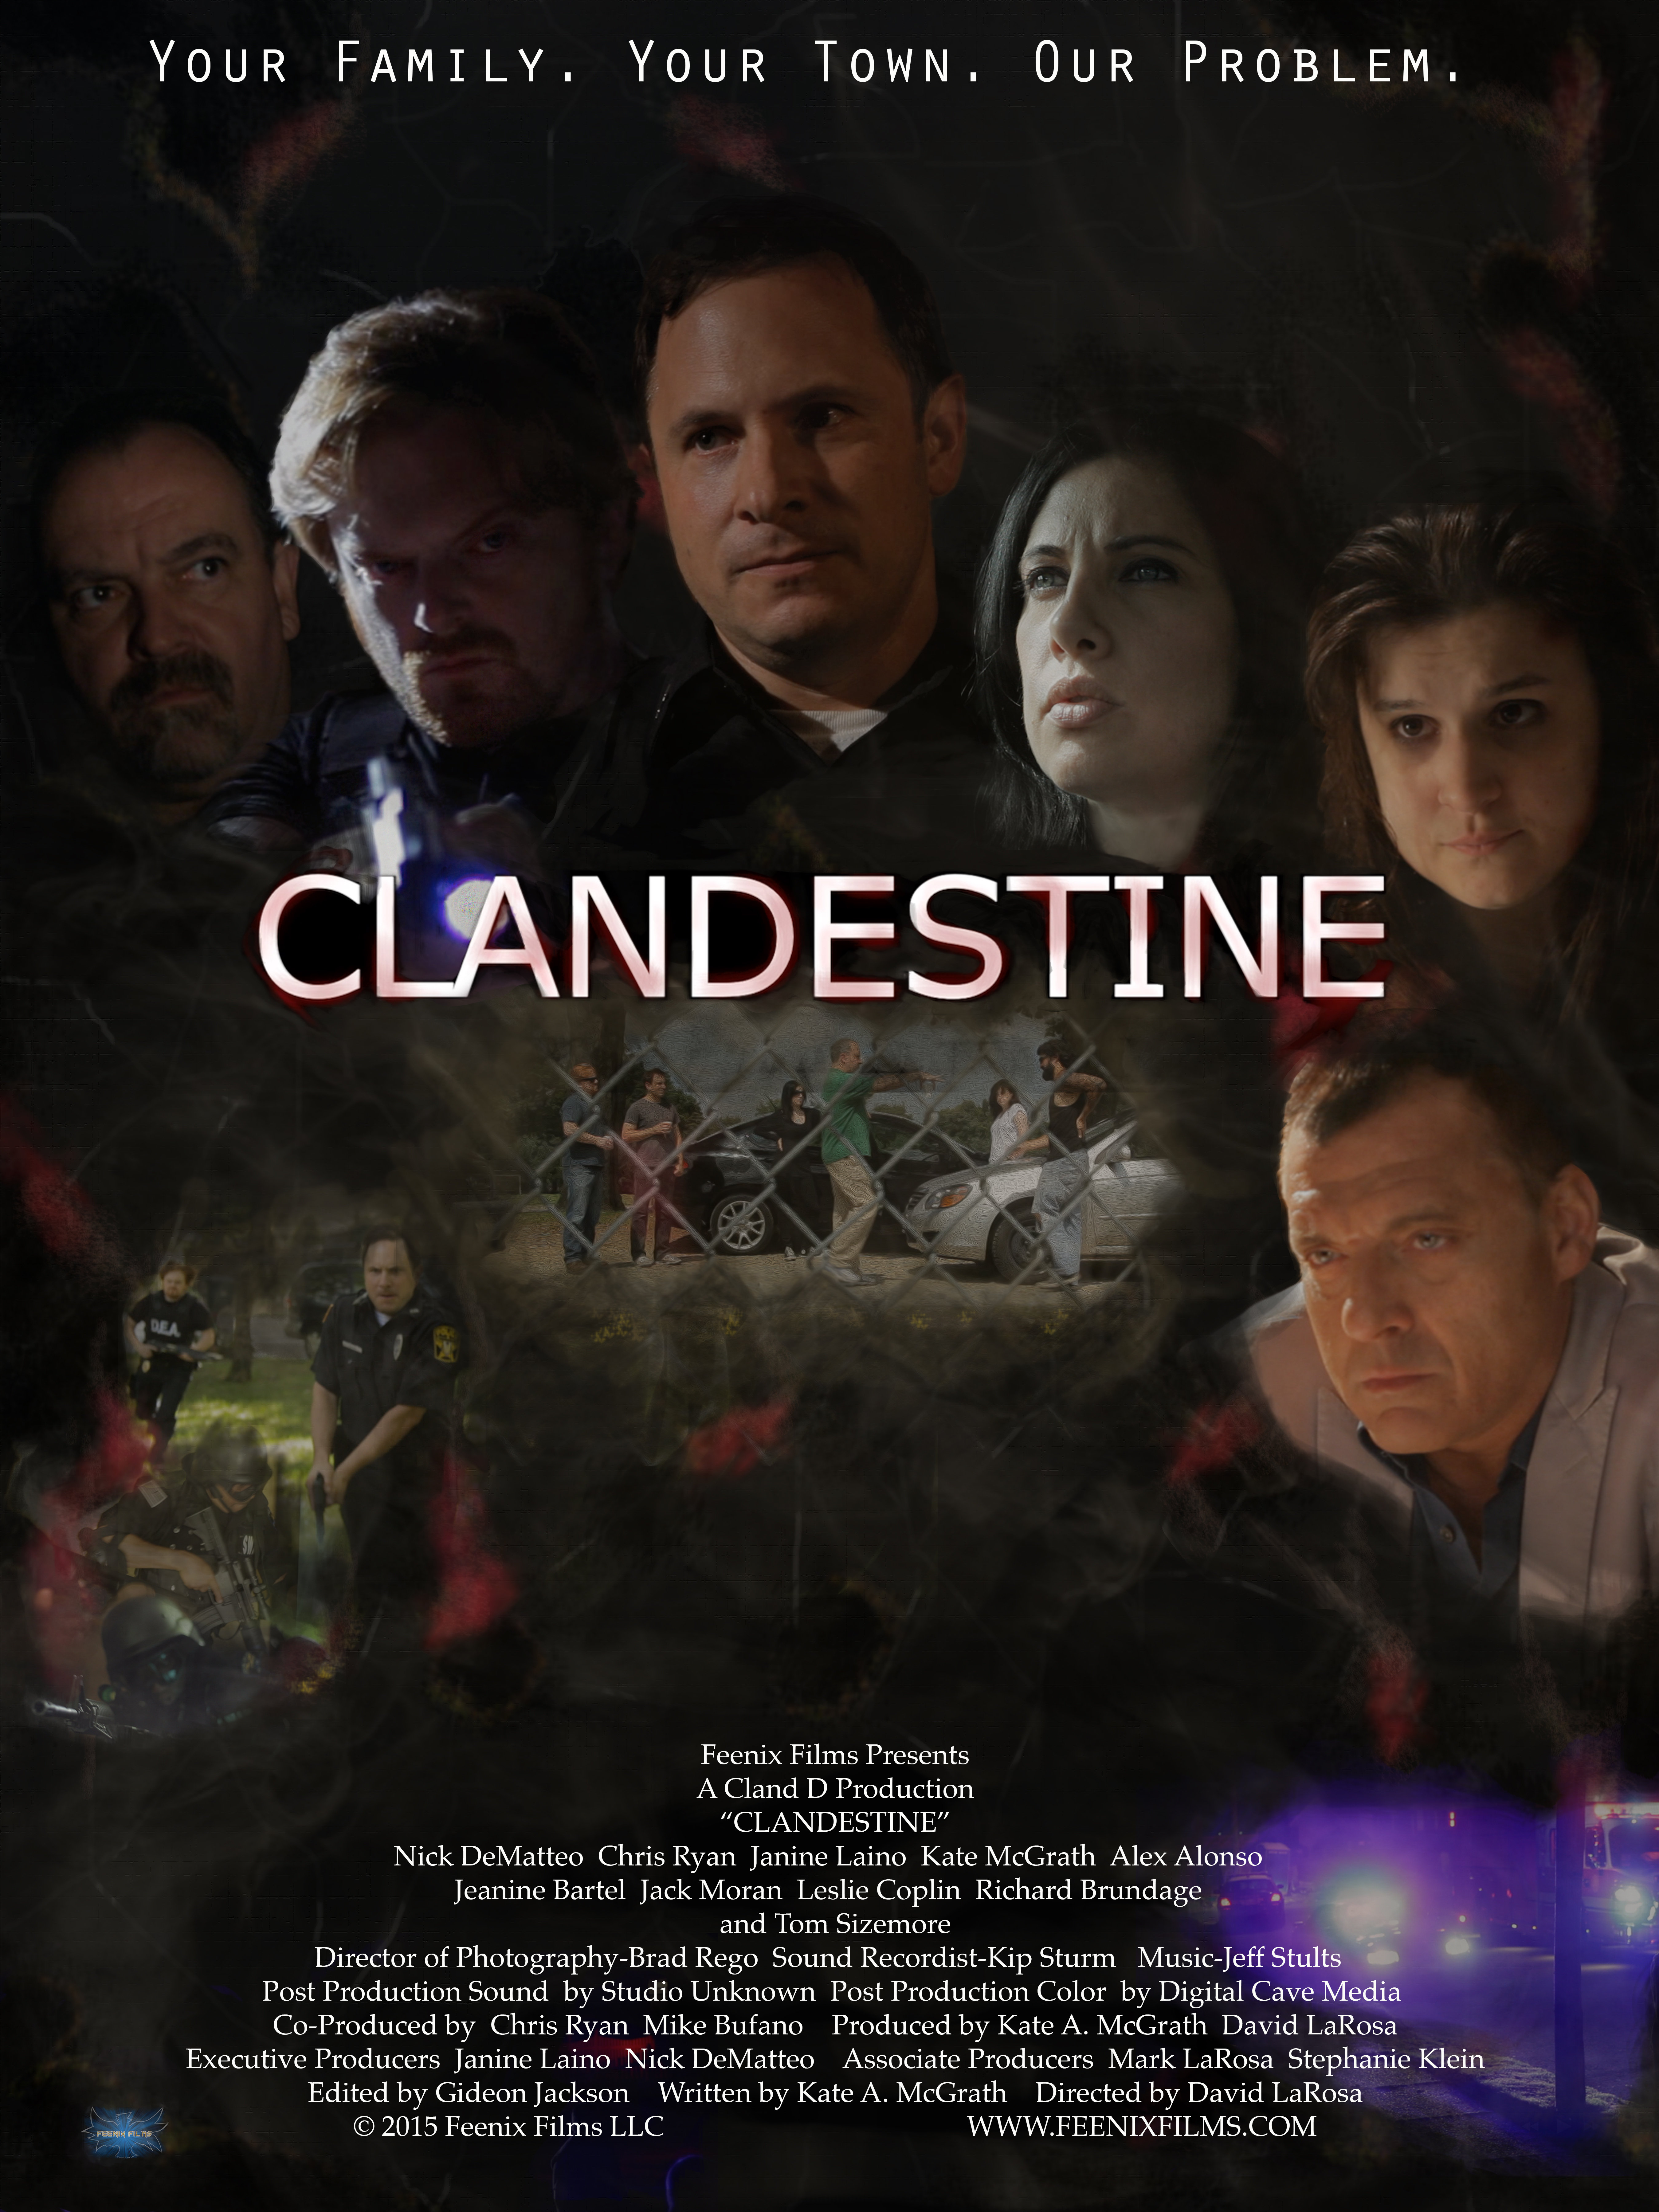 Clandestine (2016)